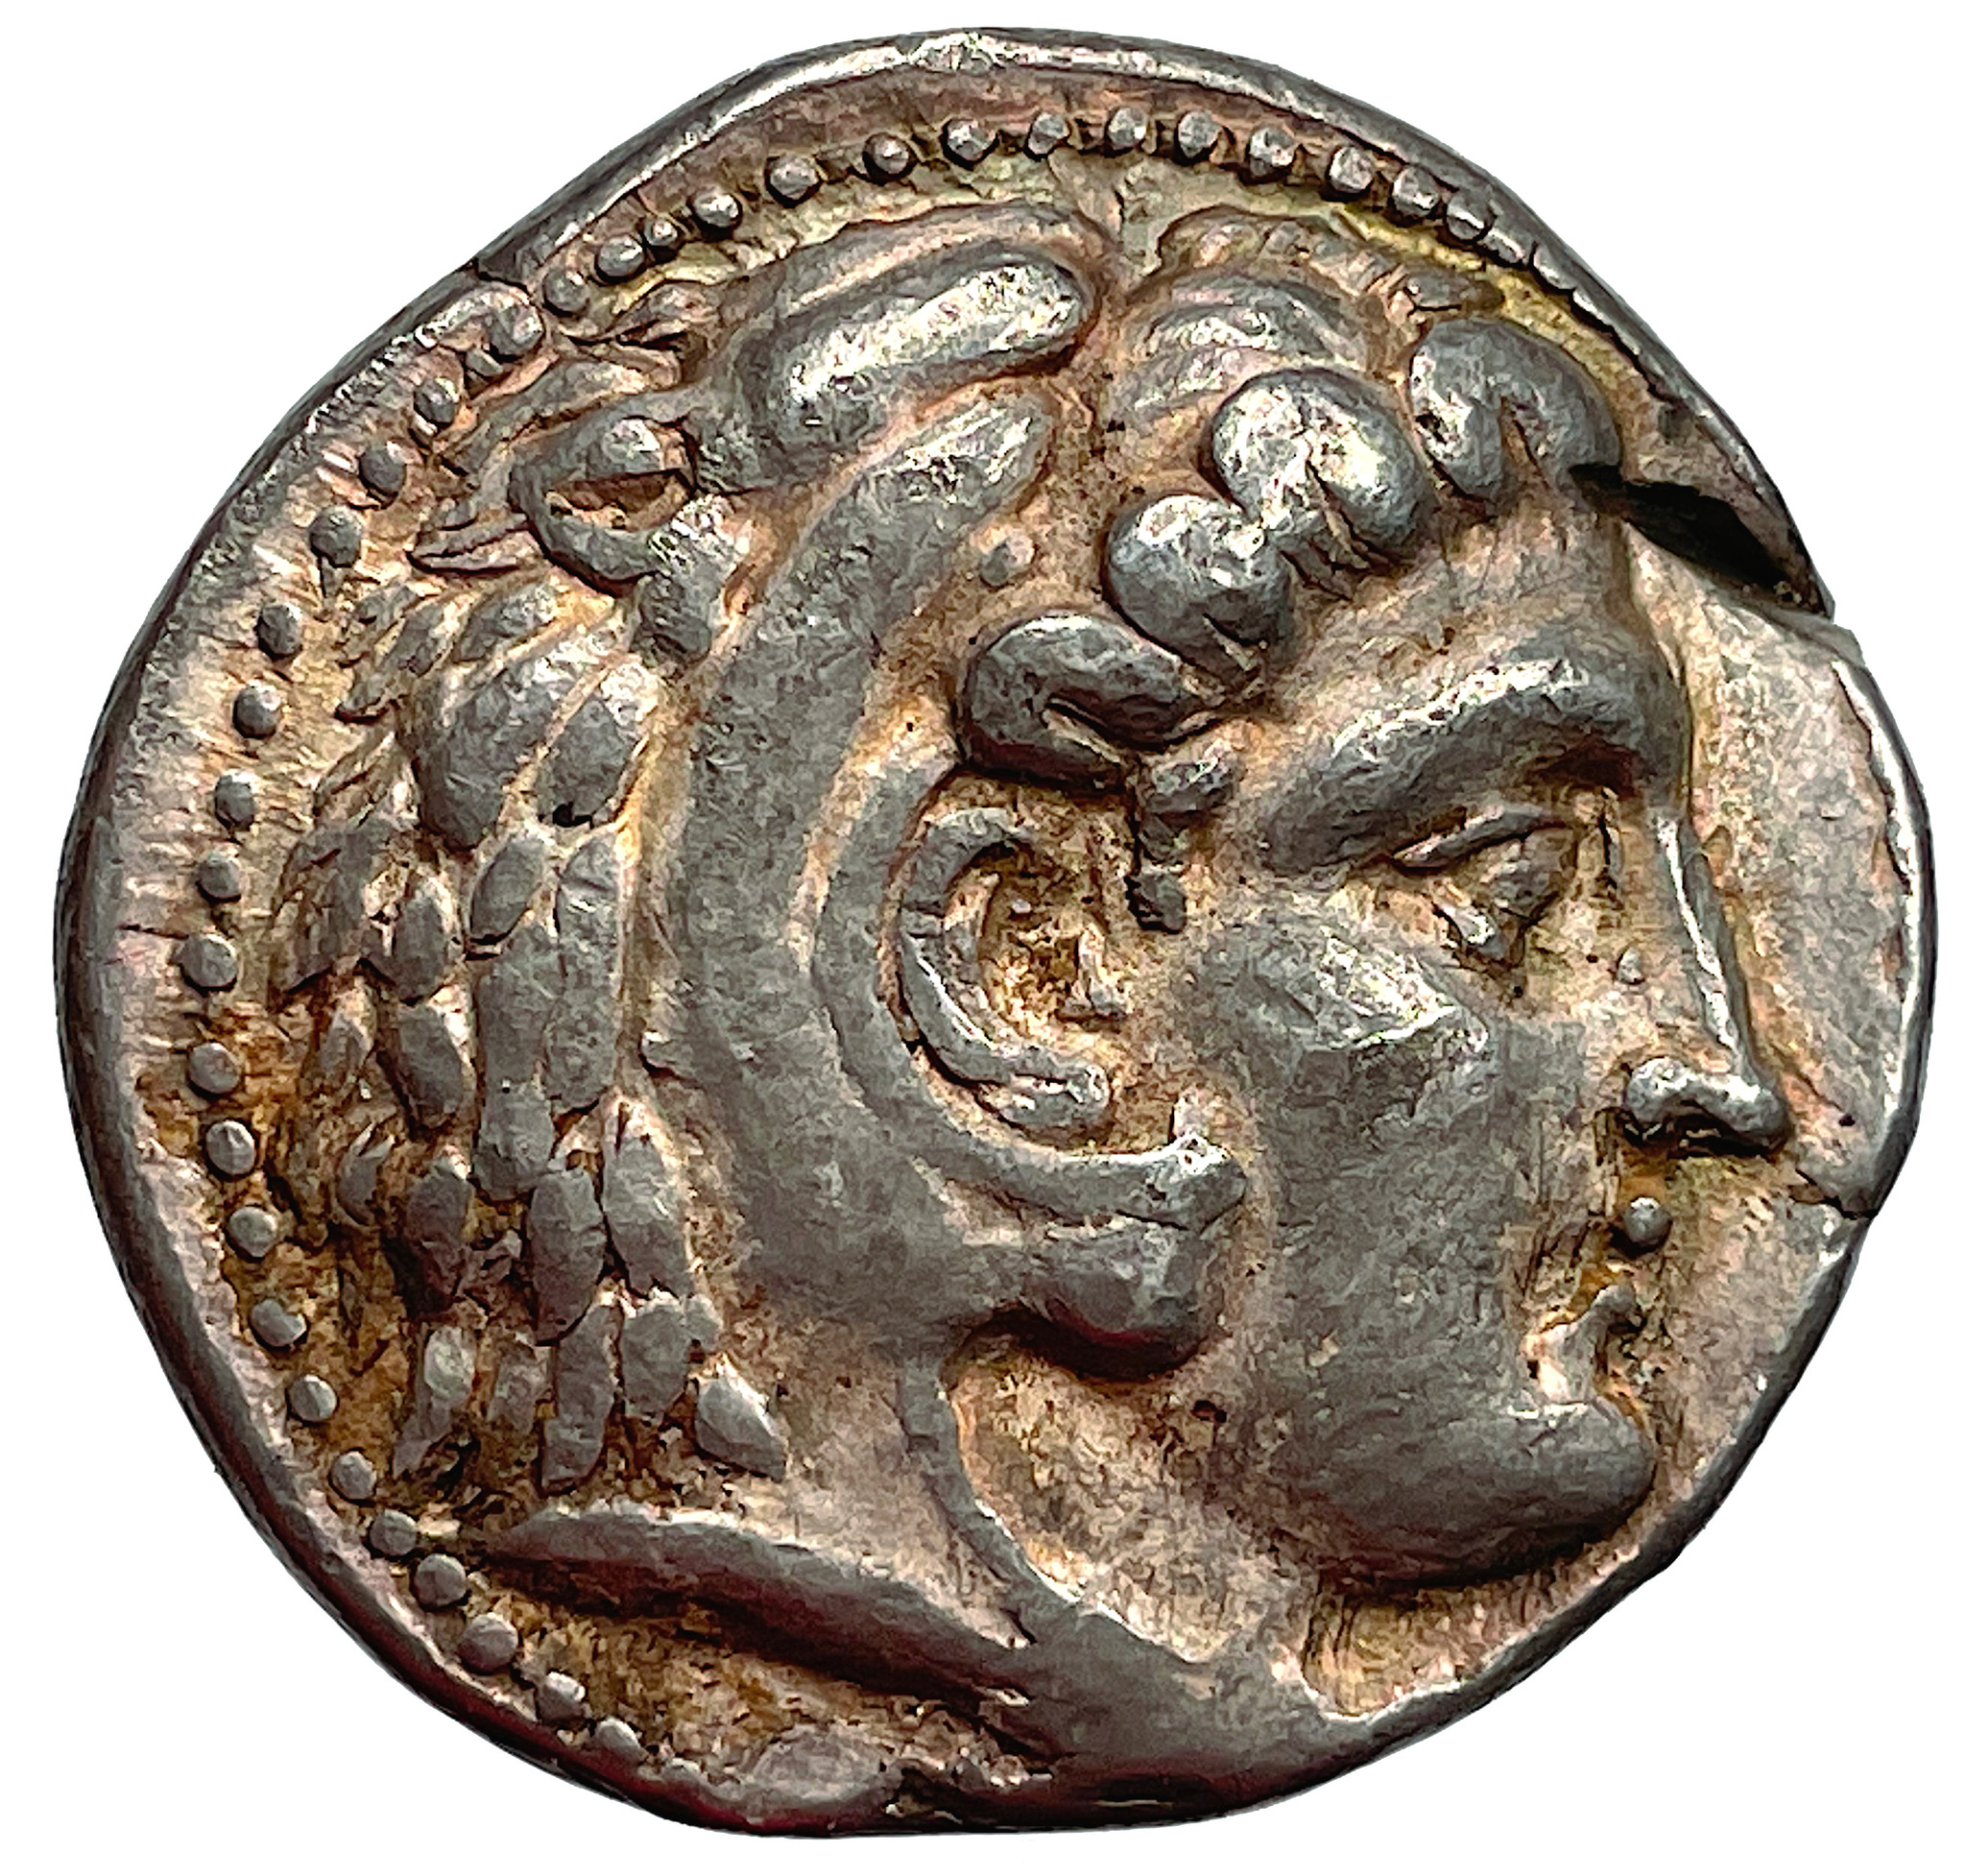 Seleukidiska konungadömet, Seleukos I Nikator 312-280 e.Kr - Alexander den stores general och grundare av det Seleukidiska konungadömet